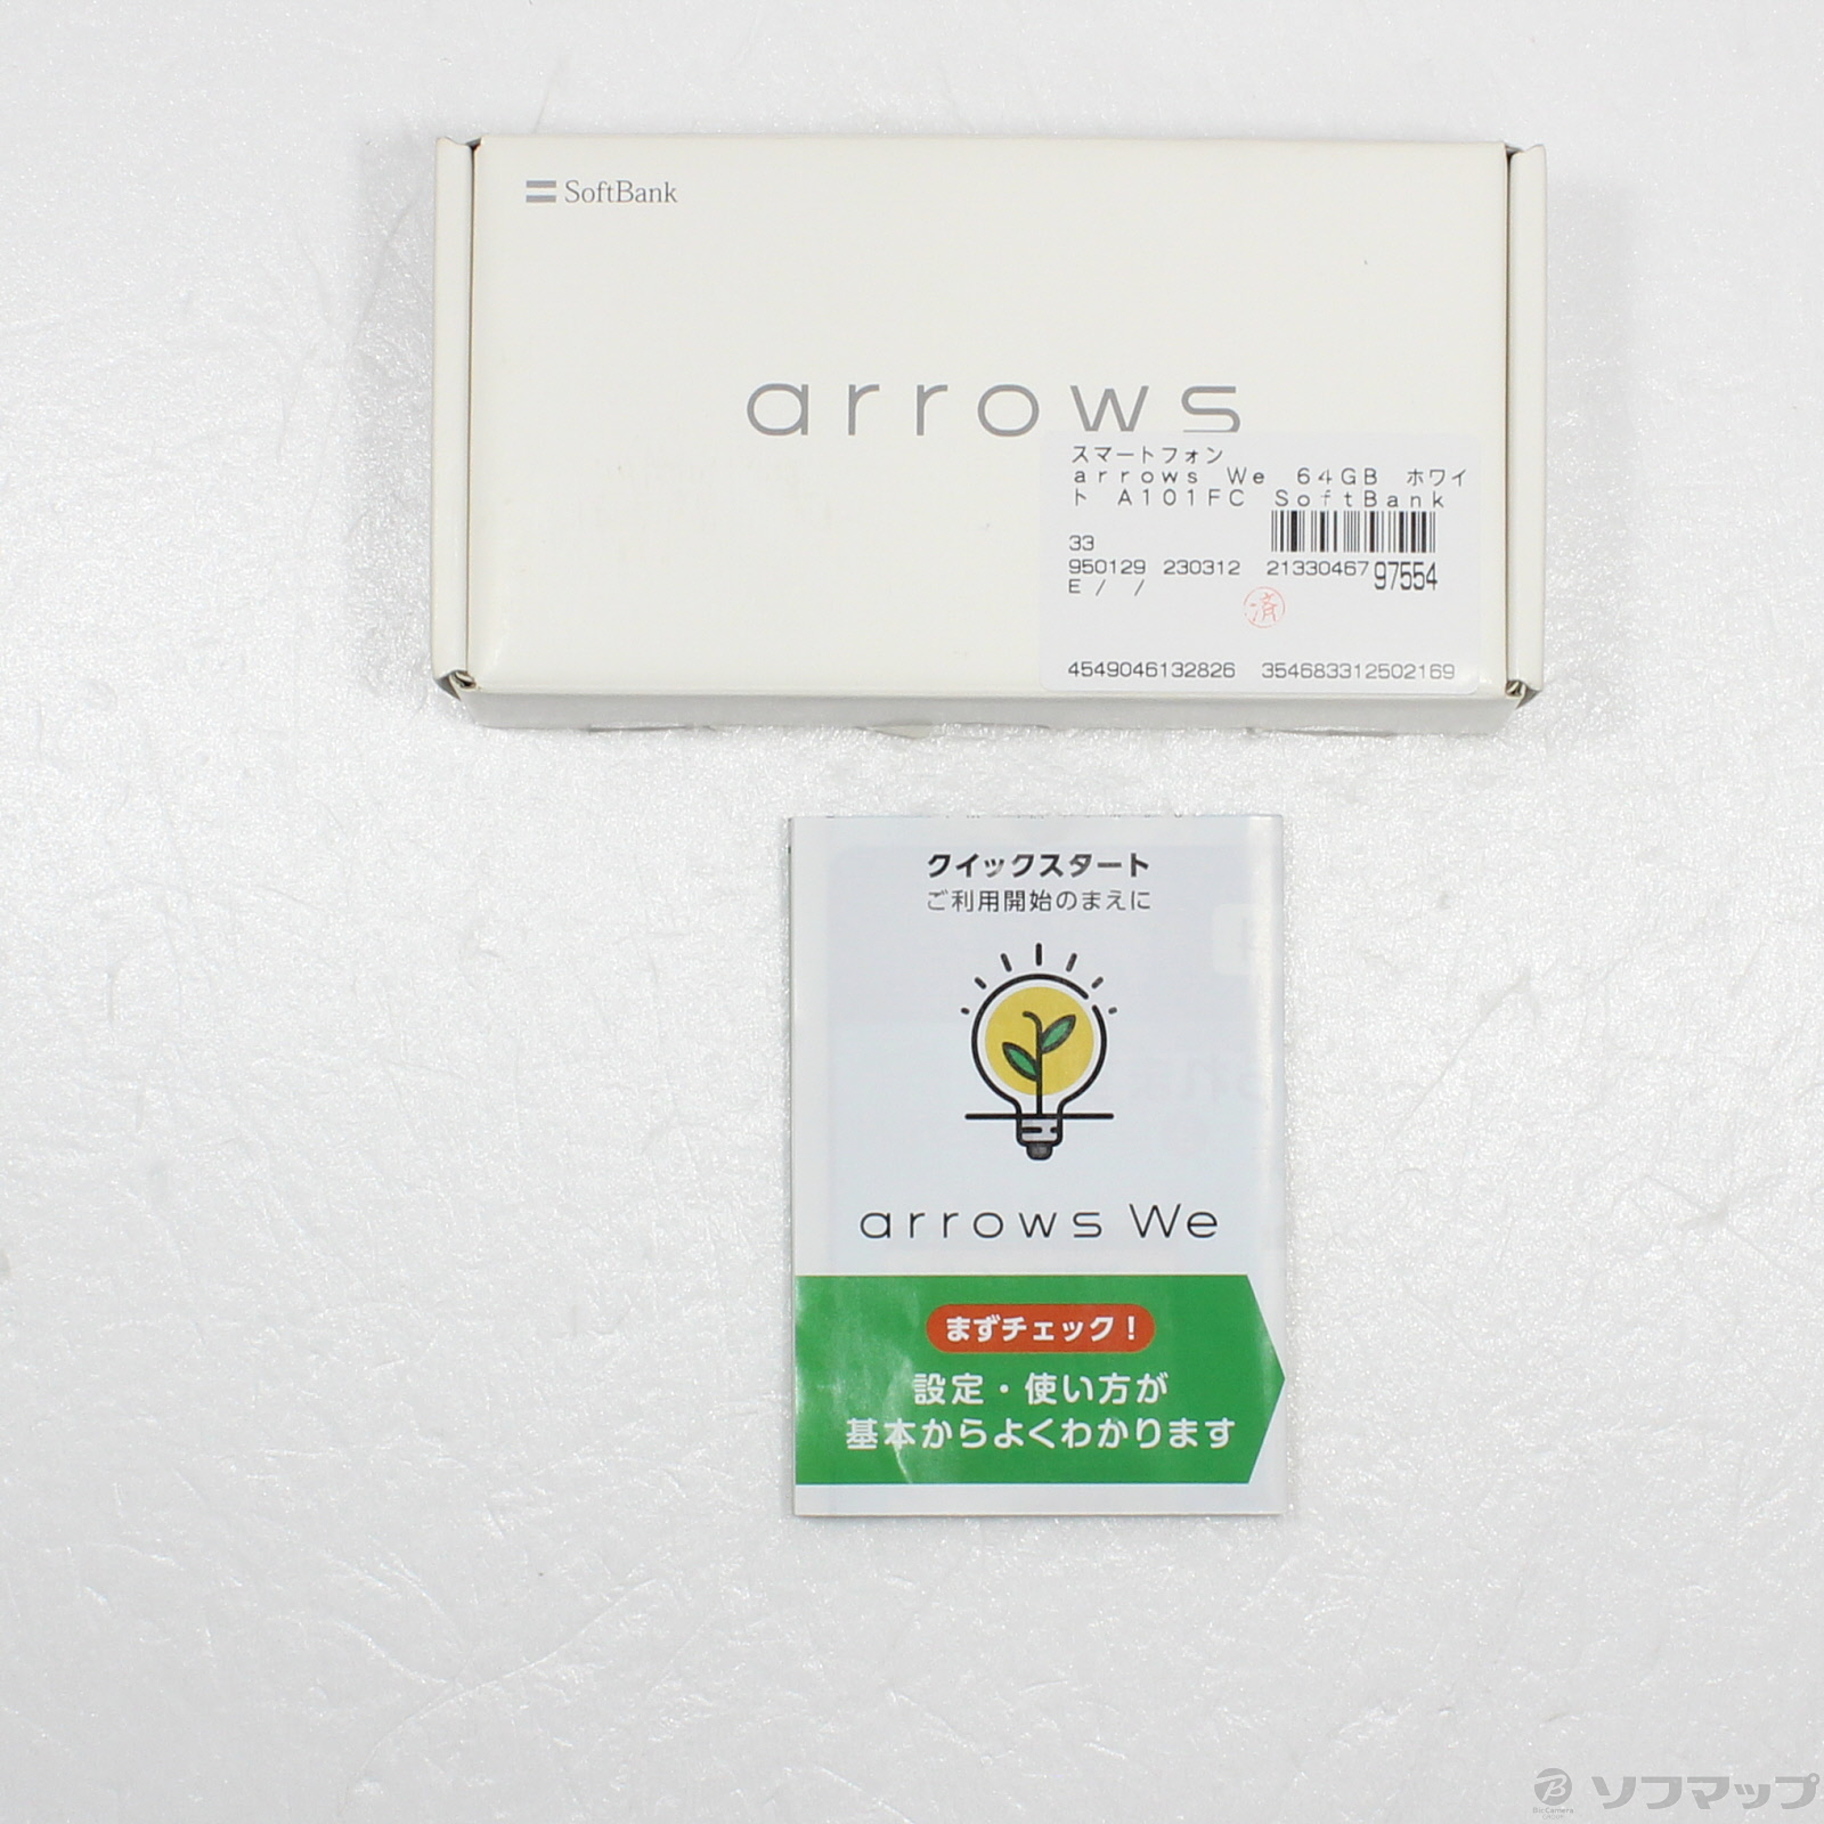 中古】arrows We 64GB ホワイト A101FC SoftBank [2133046797554